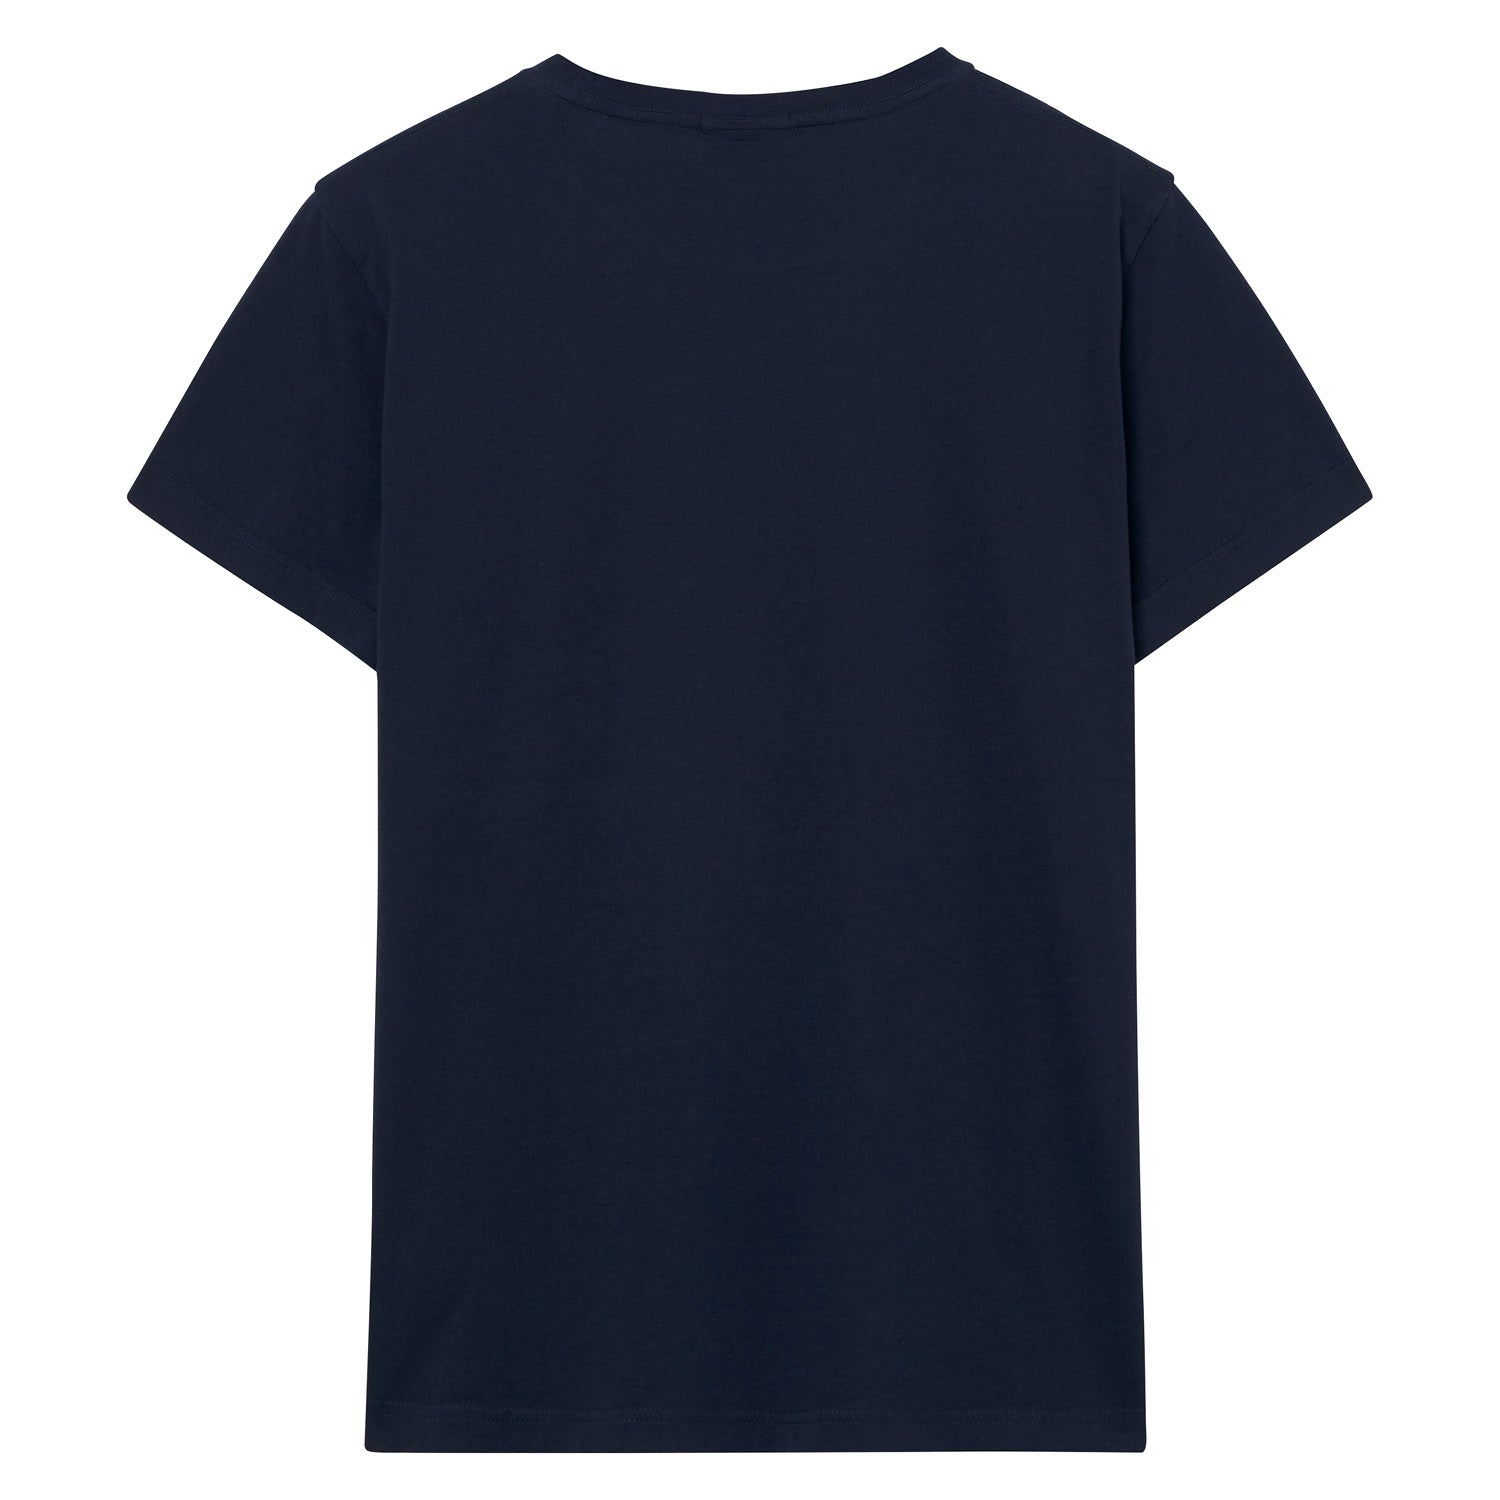 Original SS T-Shirt - Evening Blue